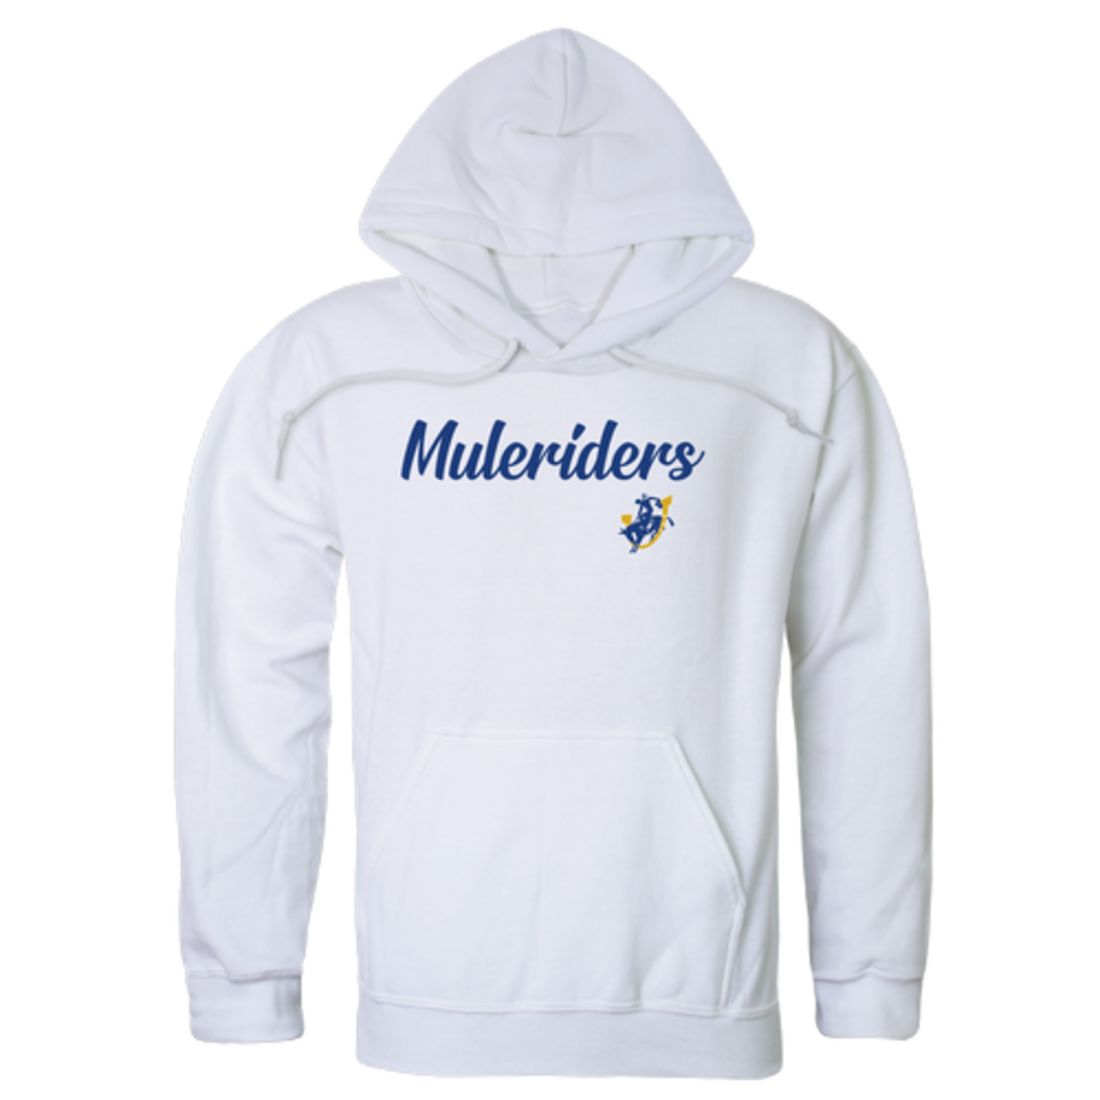 Southern-Arkansas-University-Muleriders-Script-Fleece-Hoodie-Sweatshirts